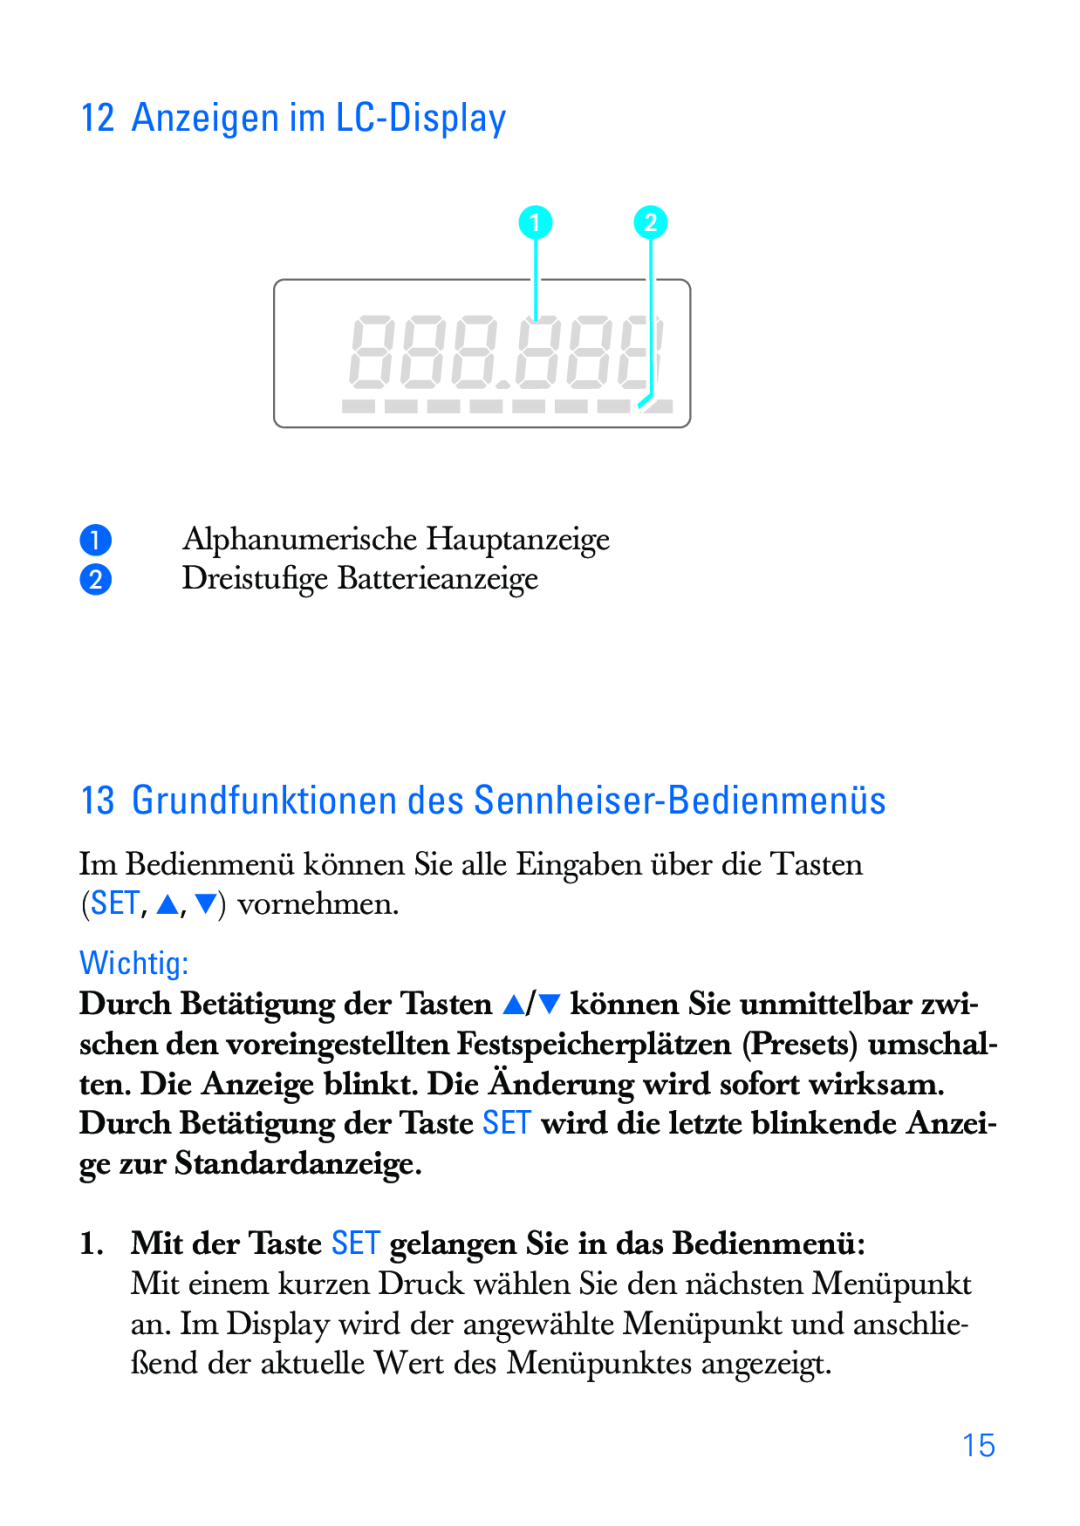 Sennheiser SKP 30 manual Anzeigen im LC-Display, Grundfunktionen des Sennheiser-Bedienmenüs, Wichtig 